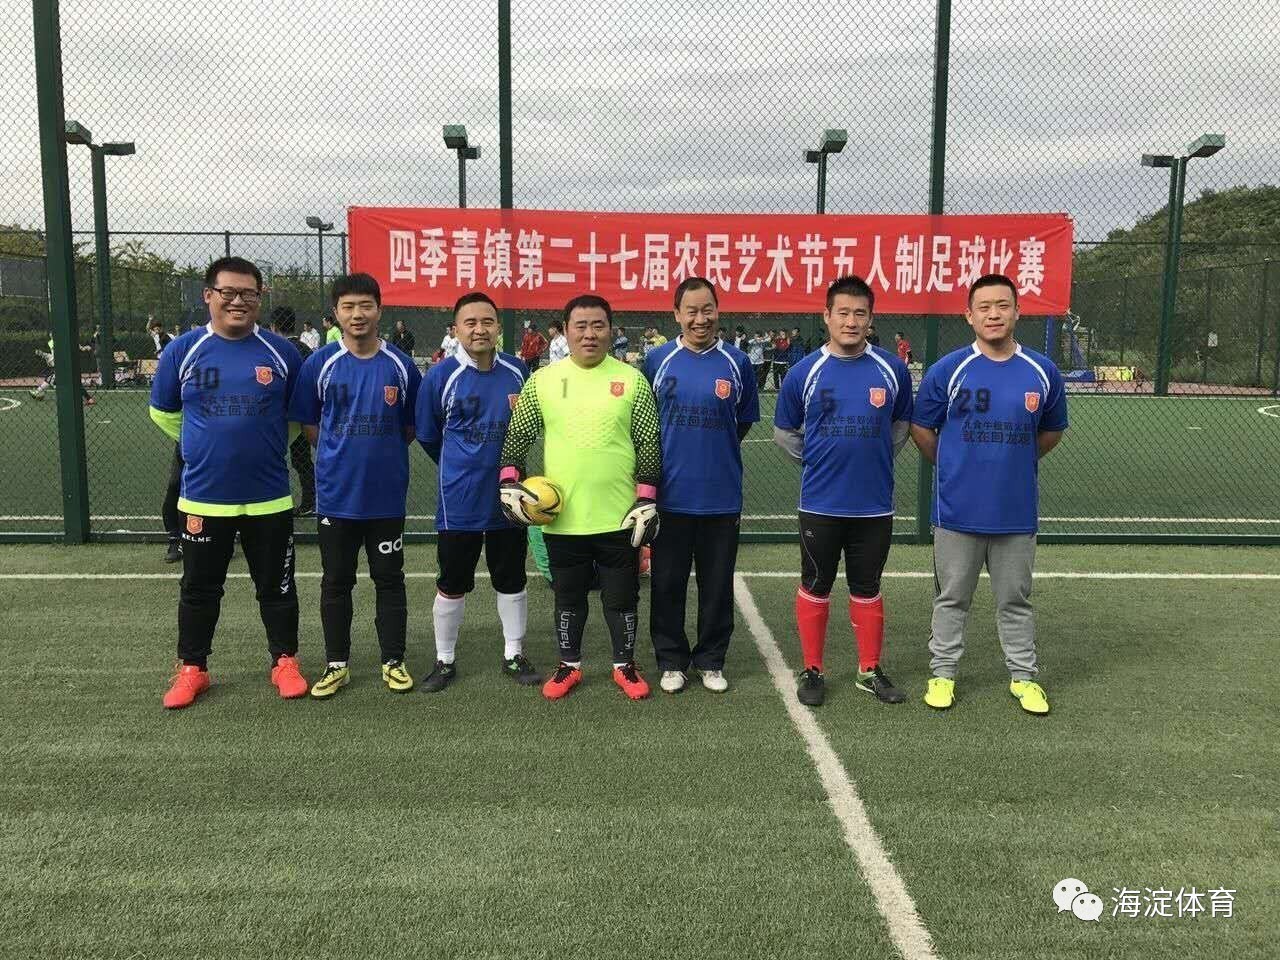 【组图】【基层体育】传播足球文化 社区足球